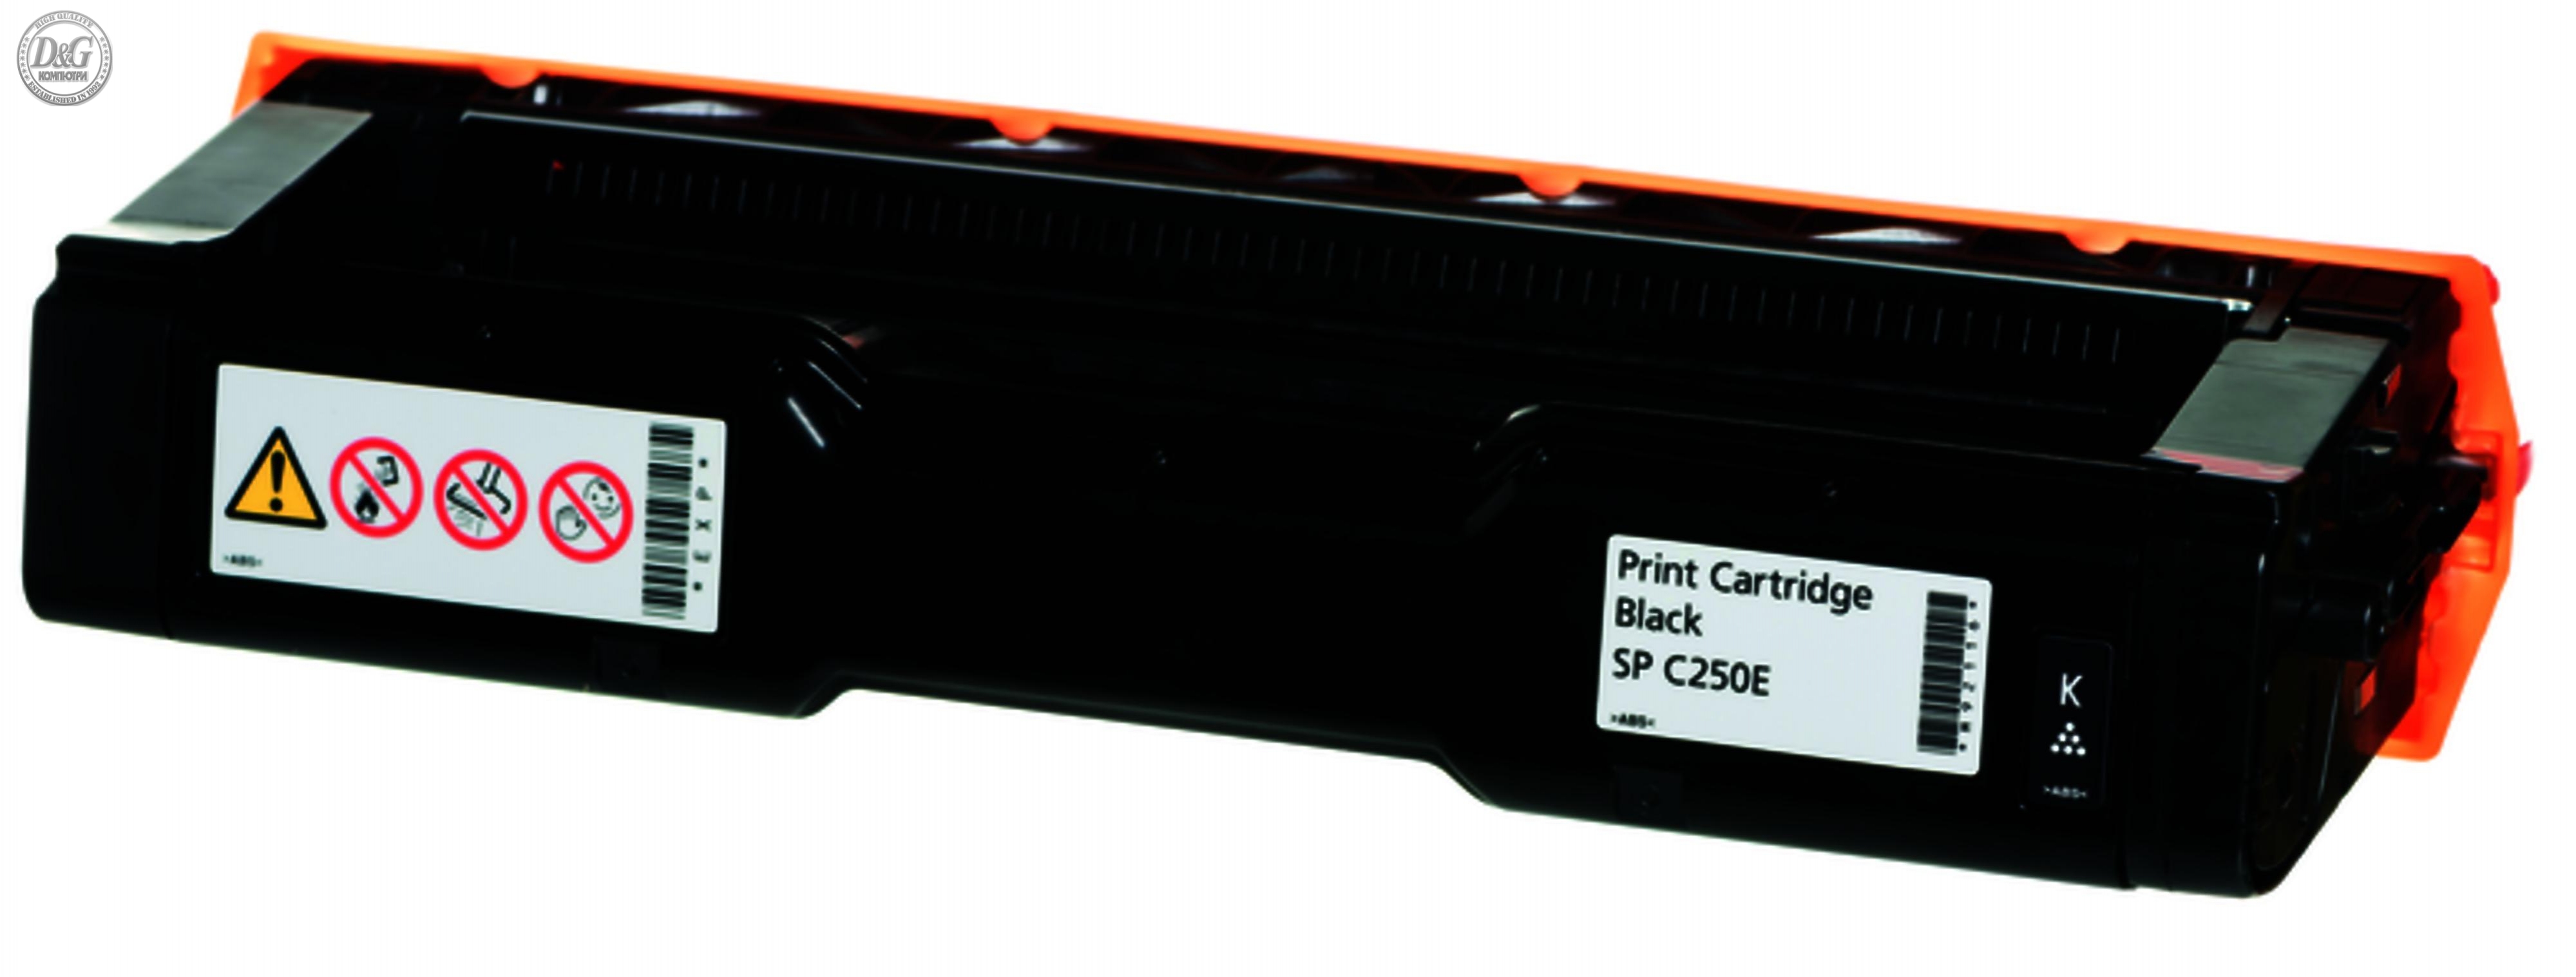 Toner Cartridge Generink Ricoh SPC250E, 2000 pages, Black